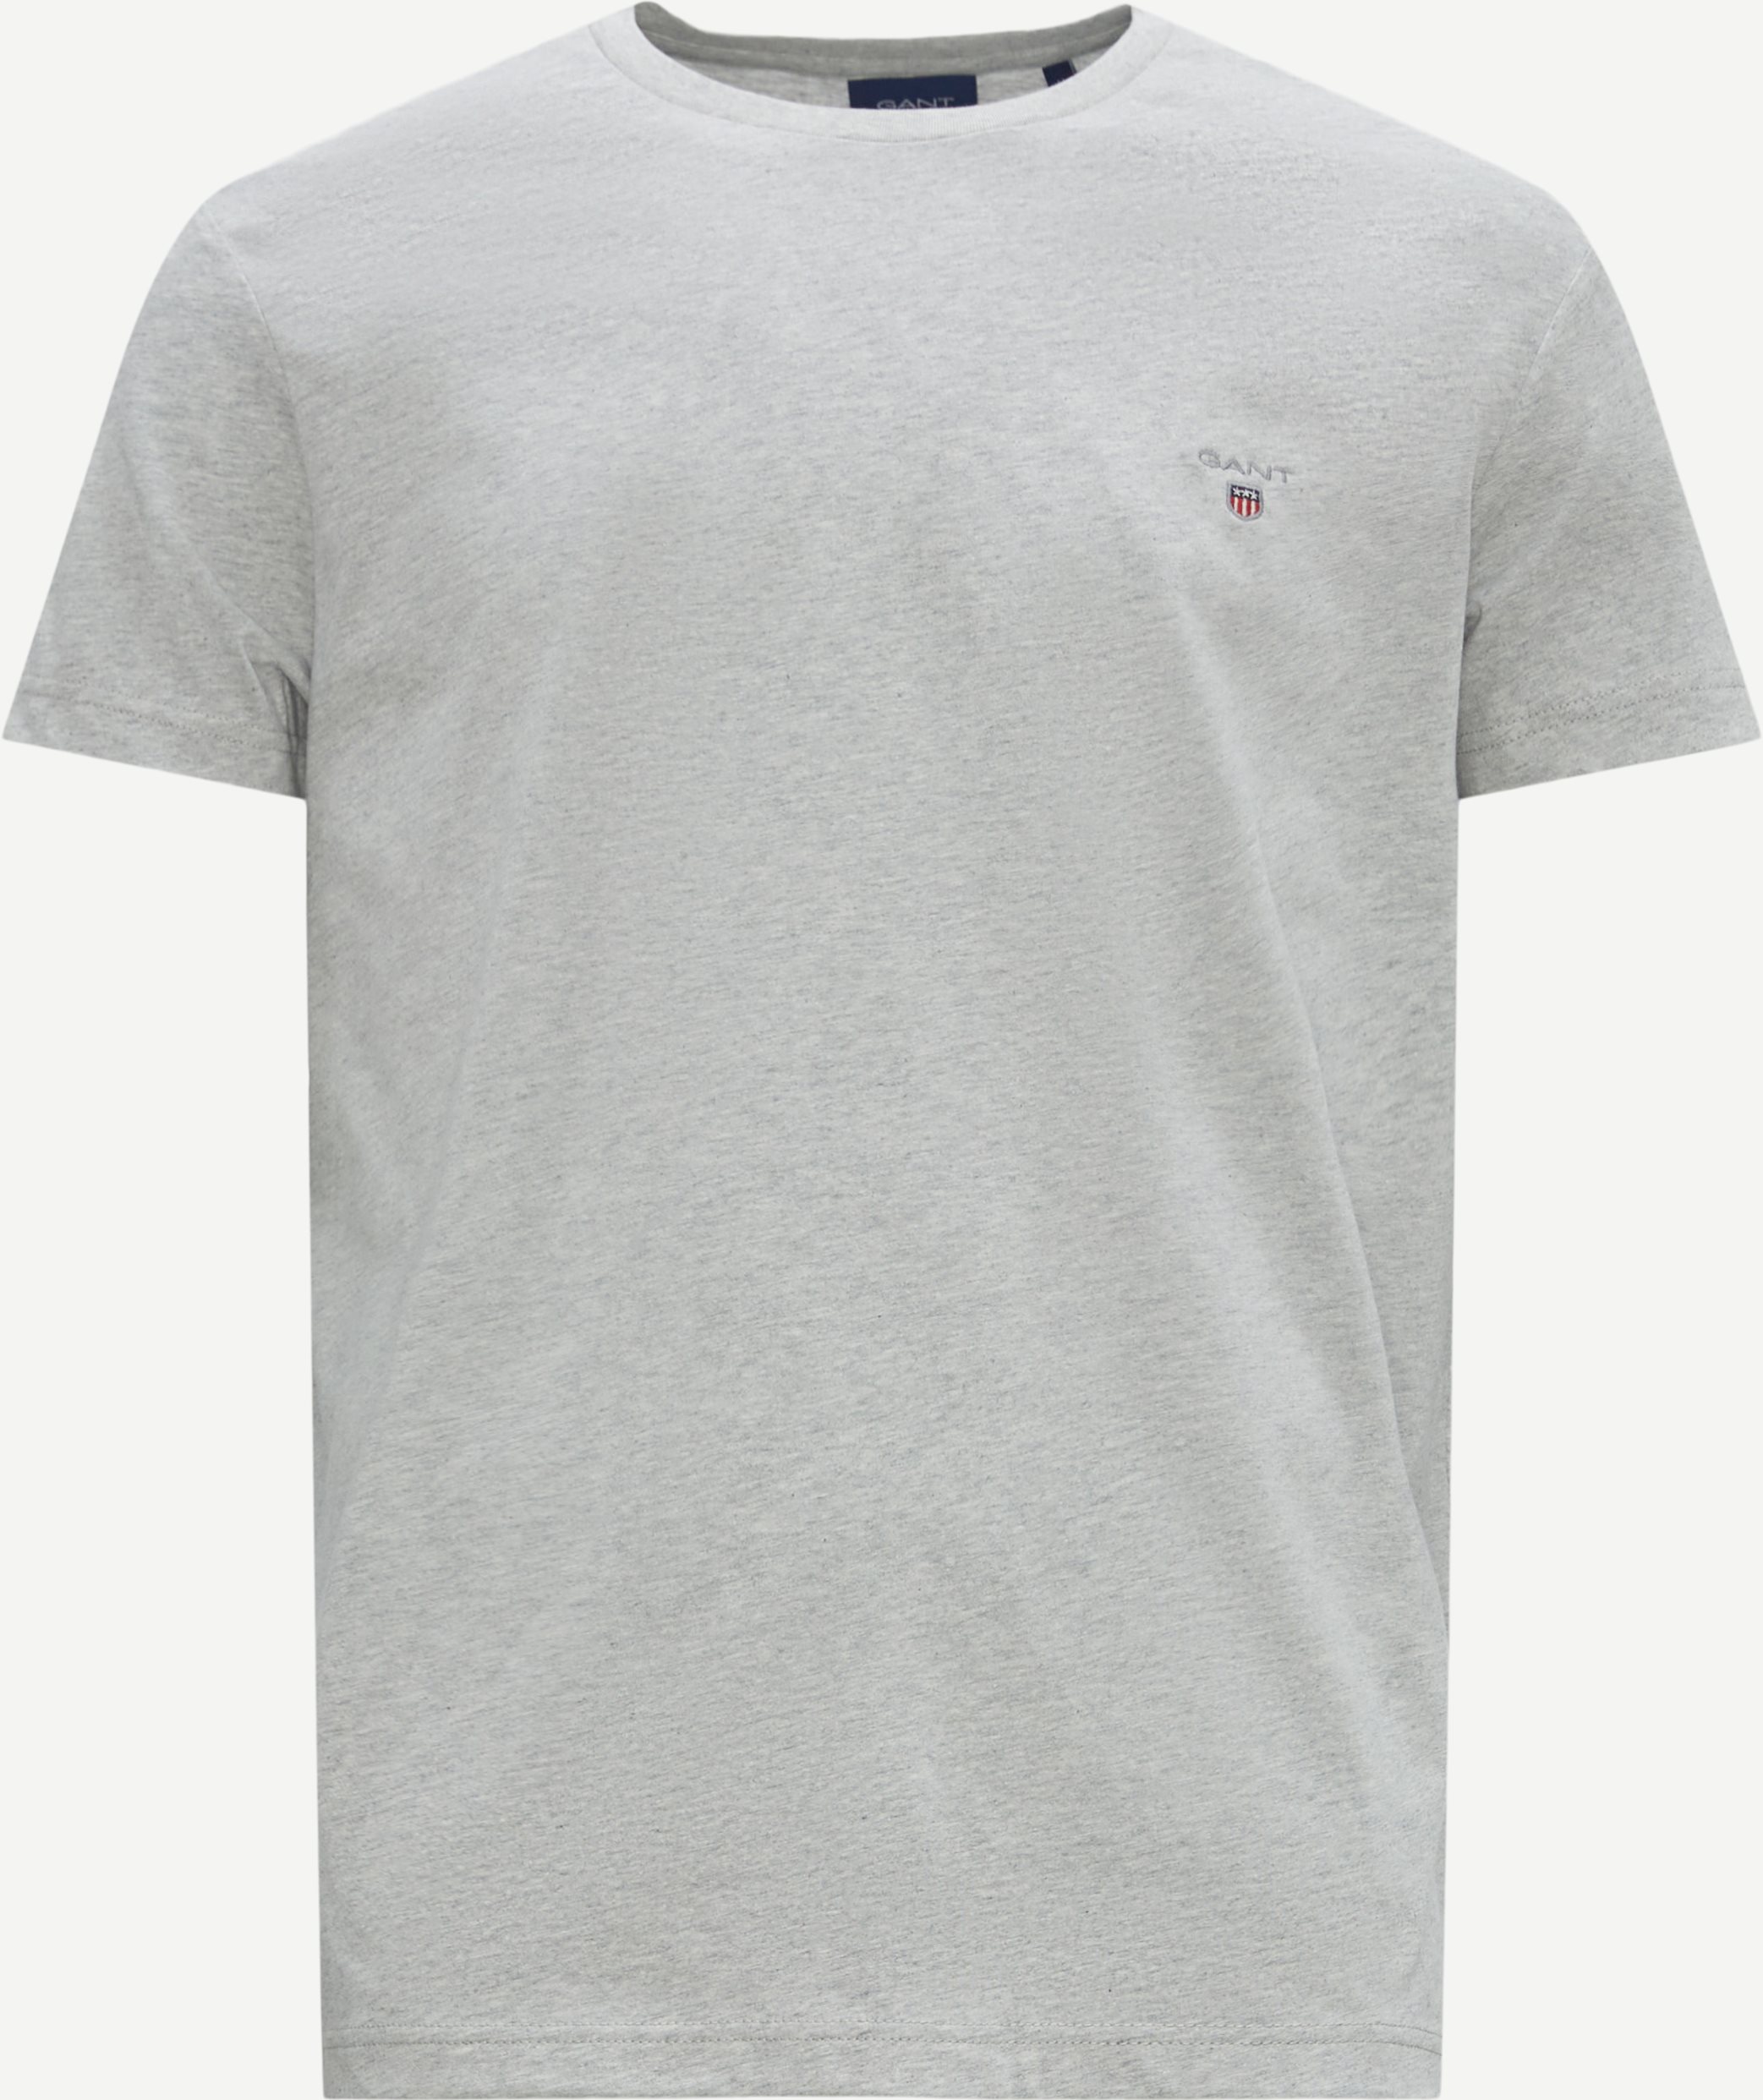 Original T-shirt - T-shirts - Regular fit - Grå